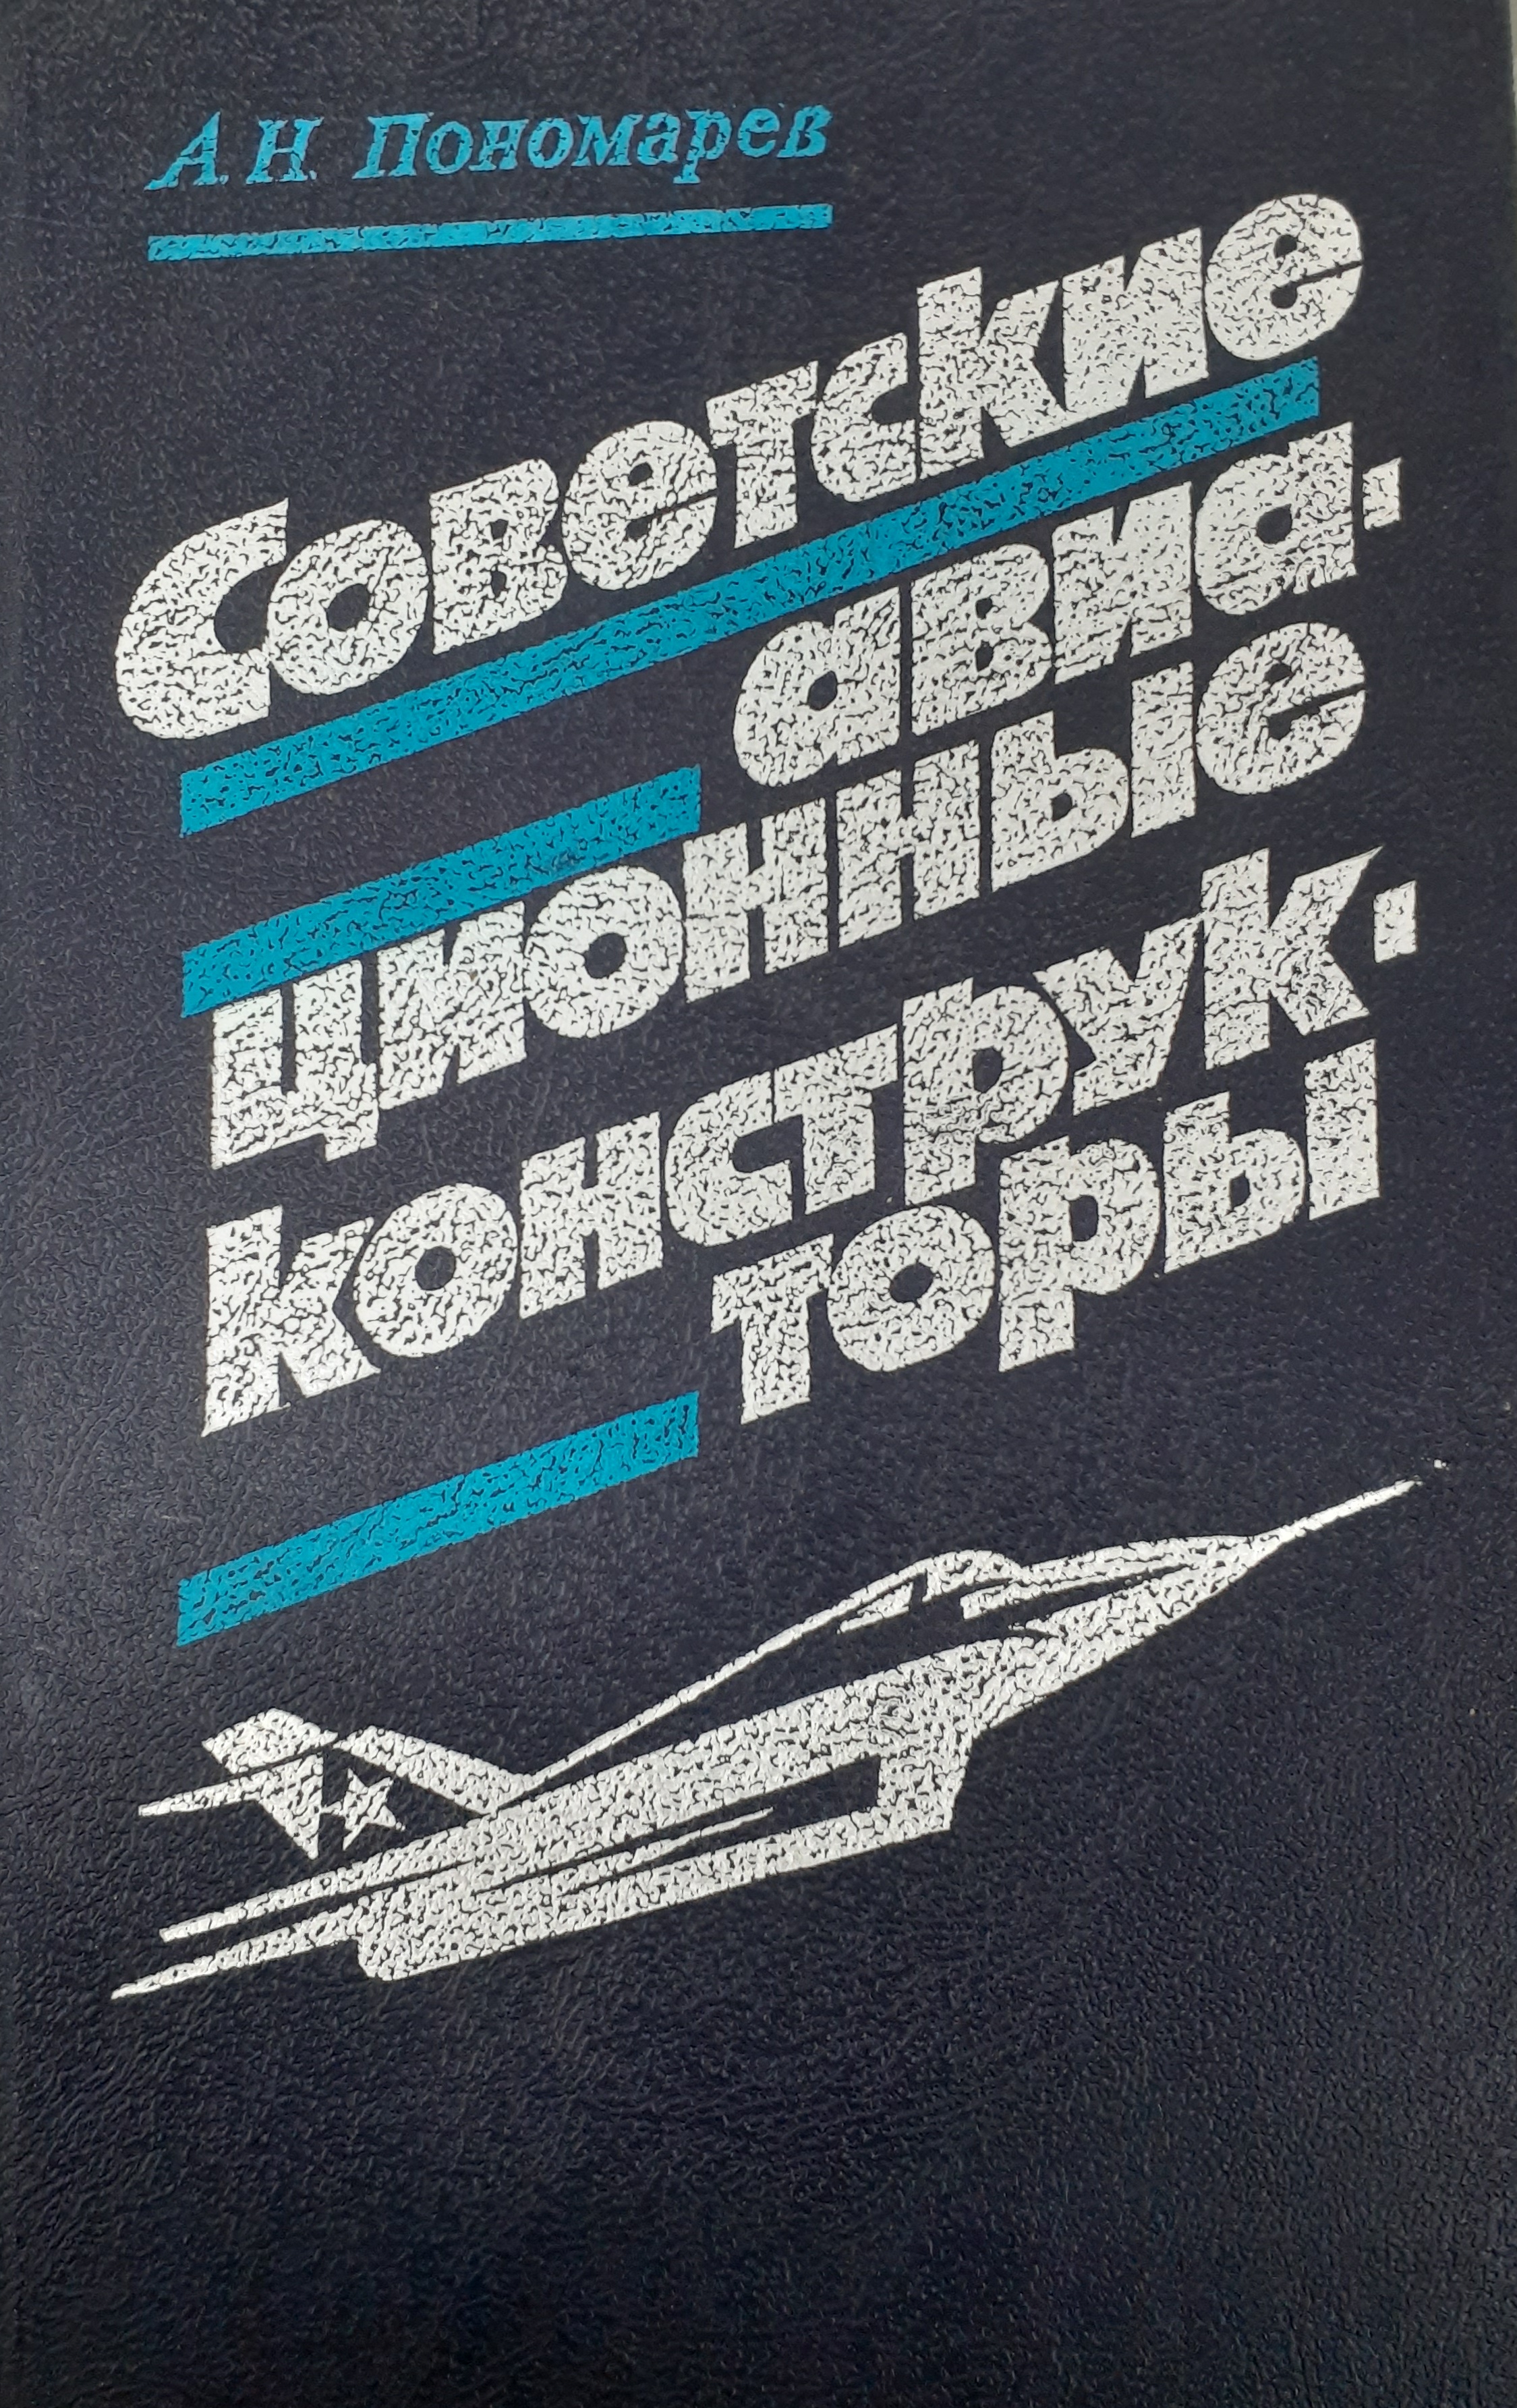 5010113  Пономарев А.Н.  Советские авиационные конструкторы